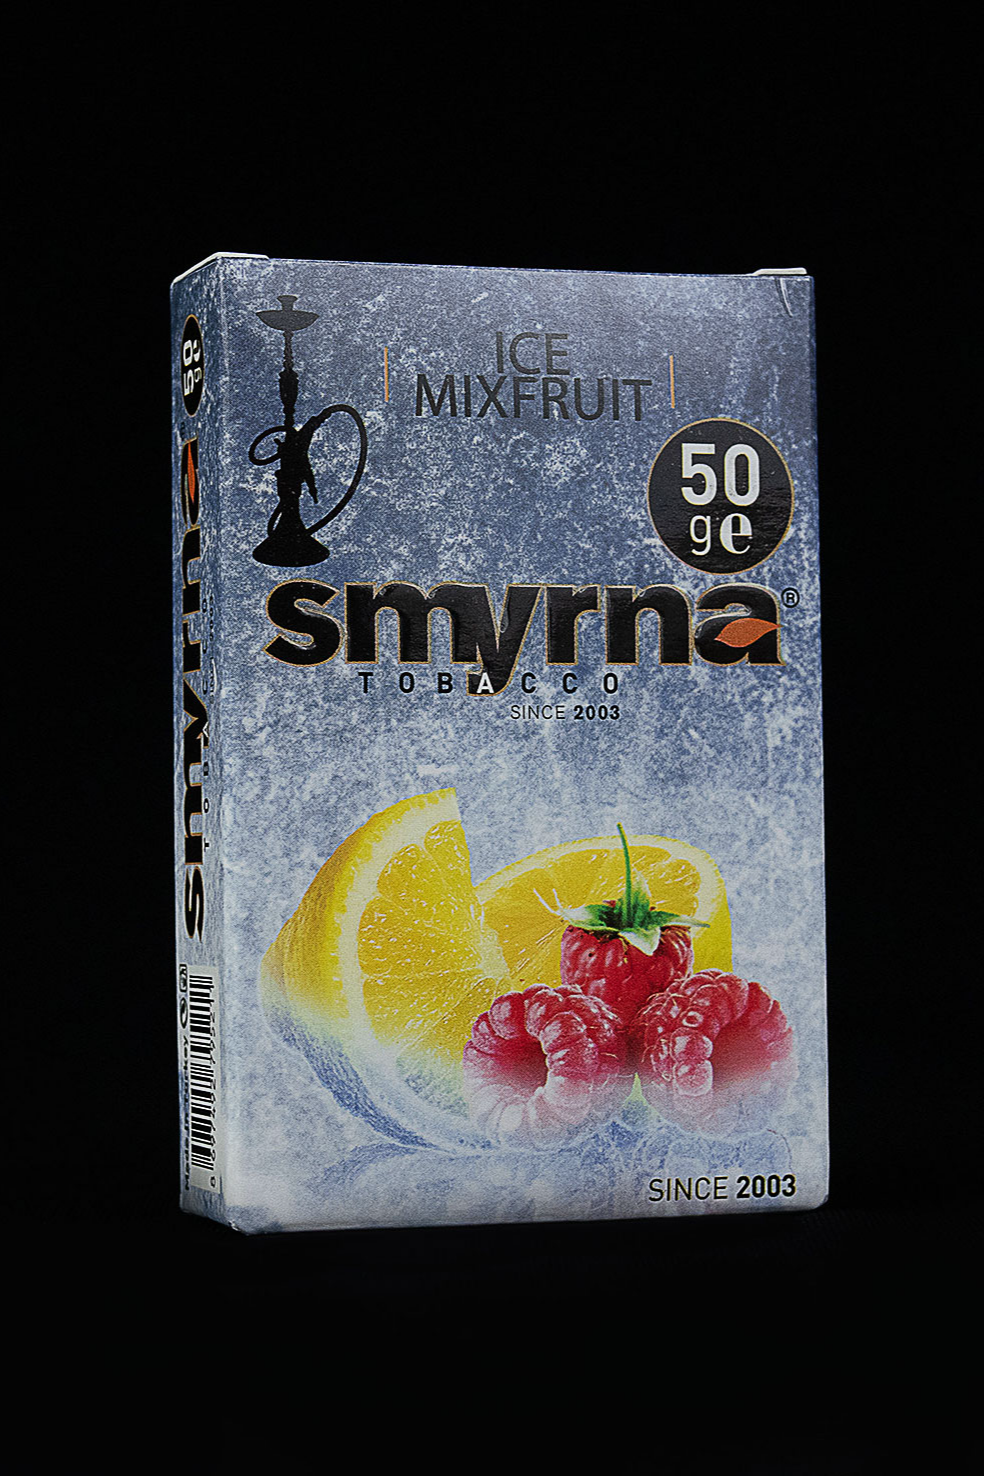 Smyrna ICE MIXFRUIT